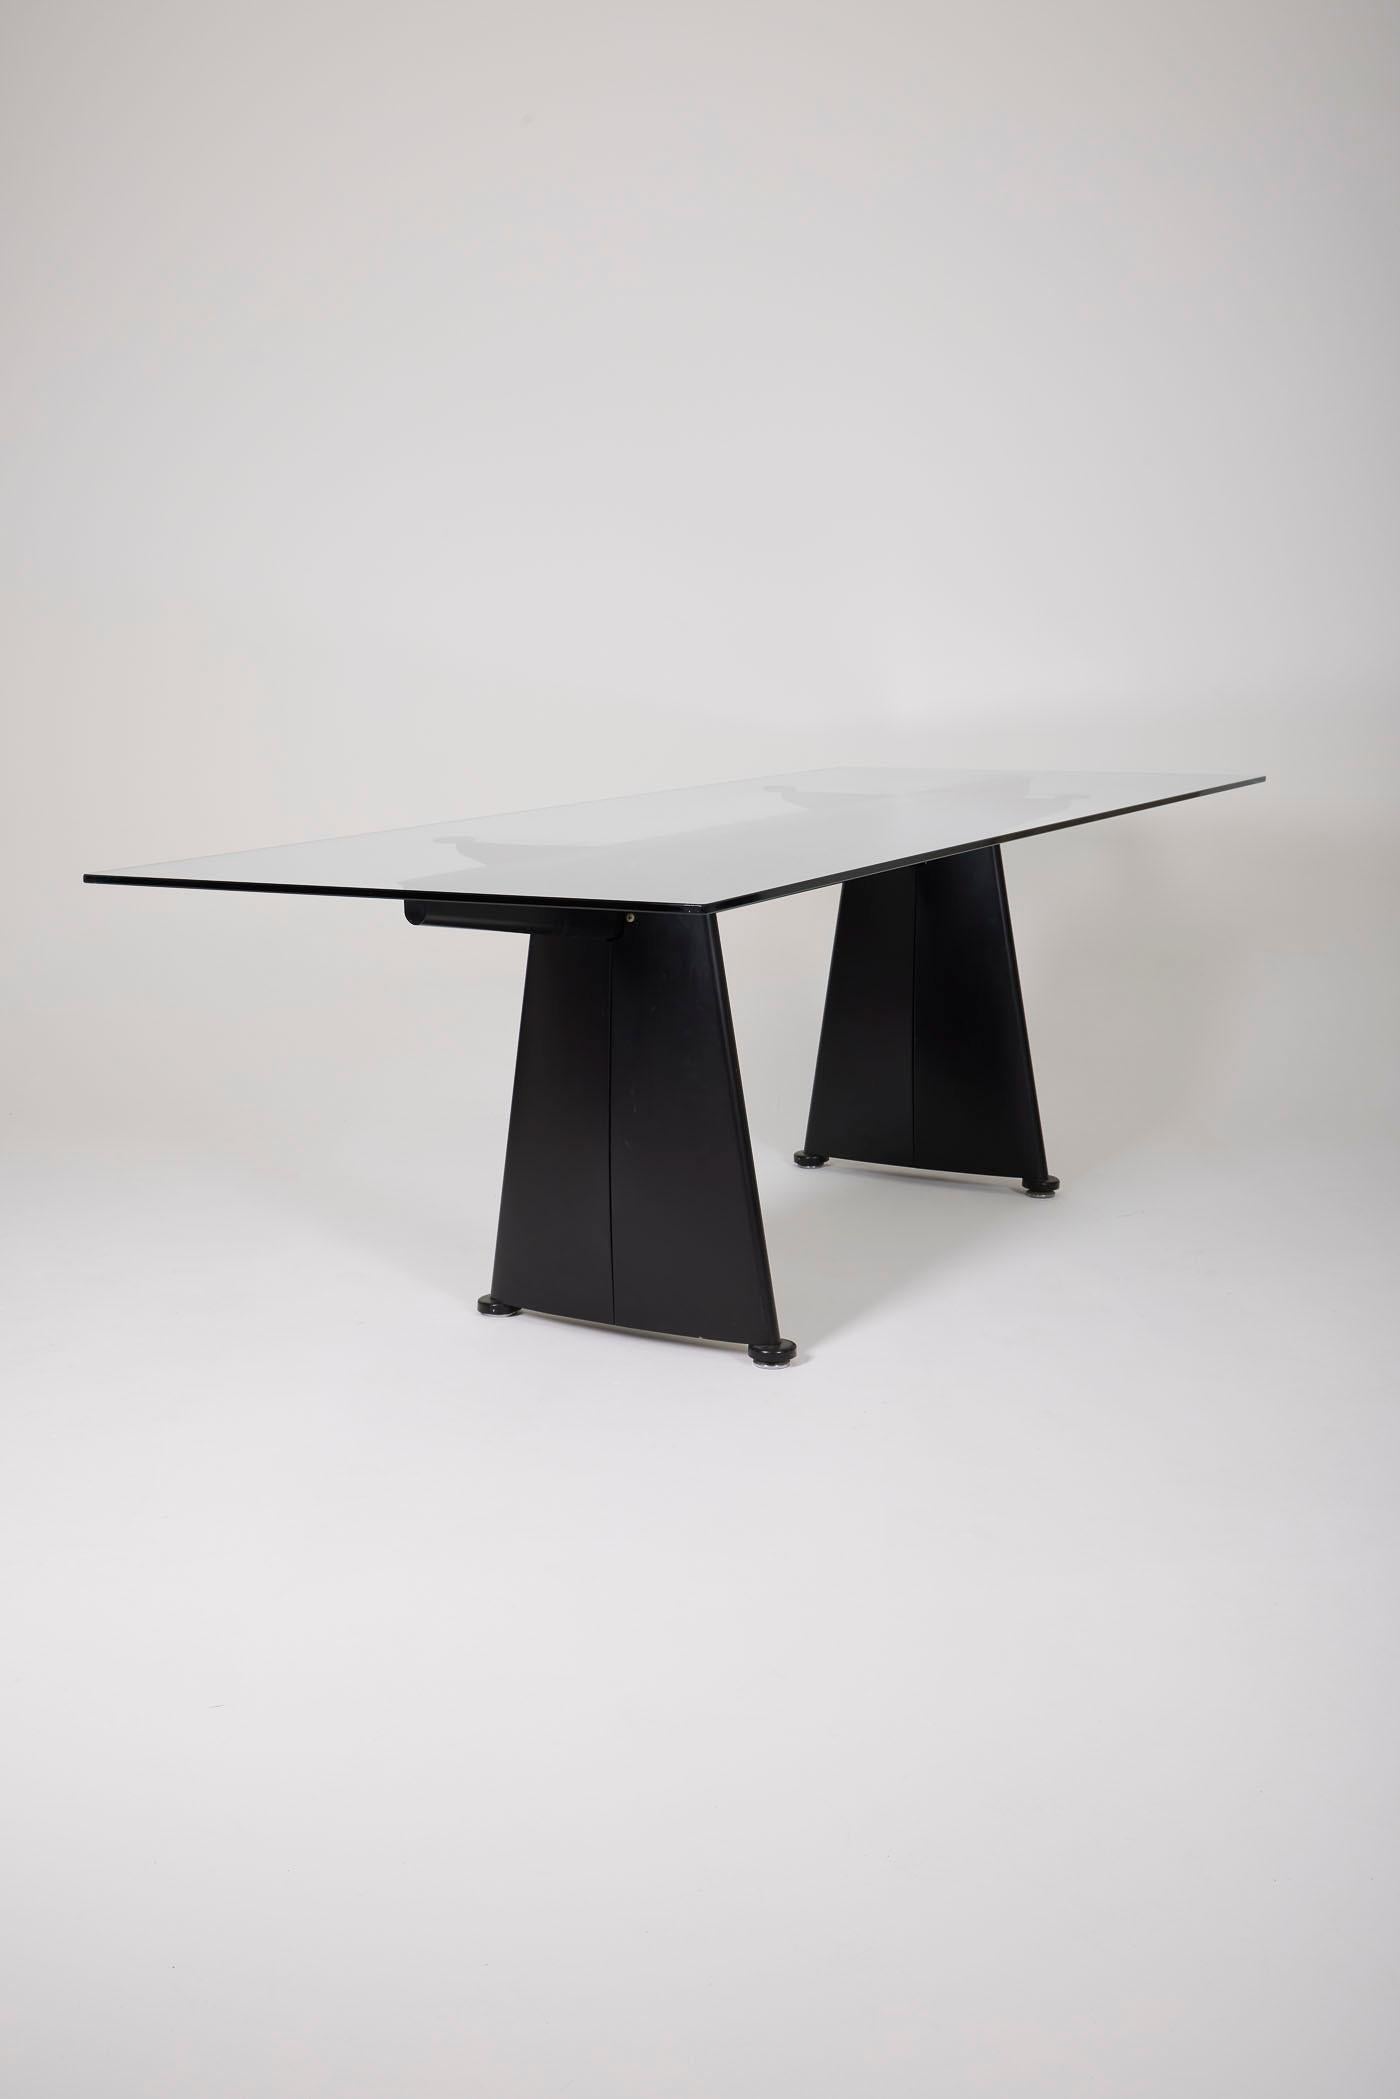 Grande table de salle à manger réalisée par le célèbre designer Jean Prouvé (1901-1984) pour Tecta dans les années 1980 (1986). Plateau en verre dépoli et structure en métal noir. Très bon état.
DV142